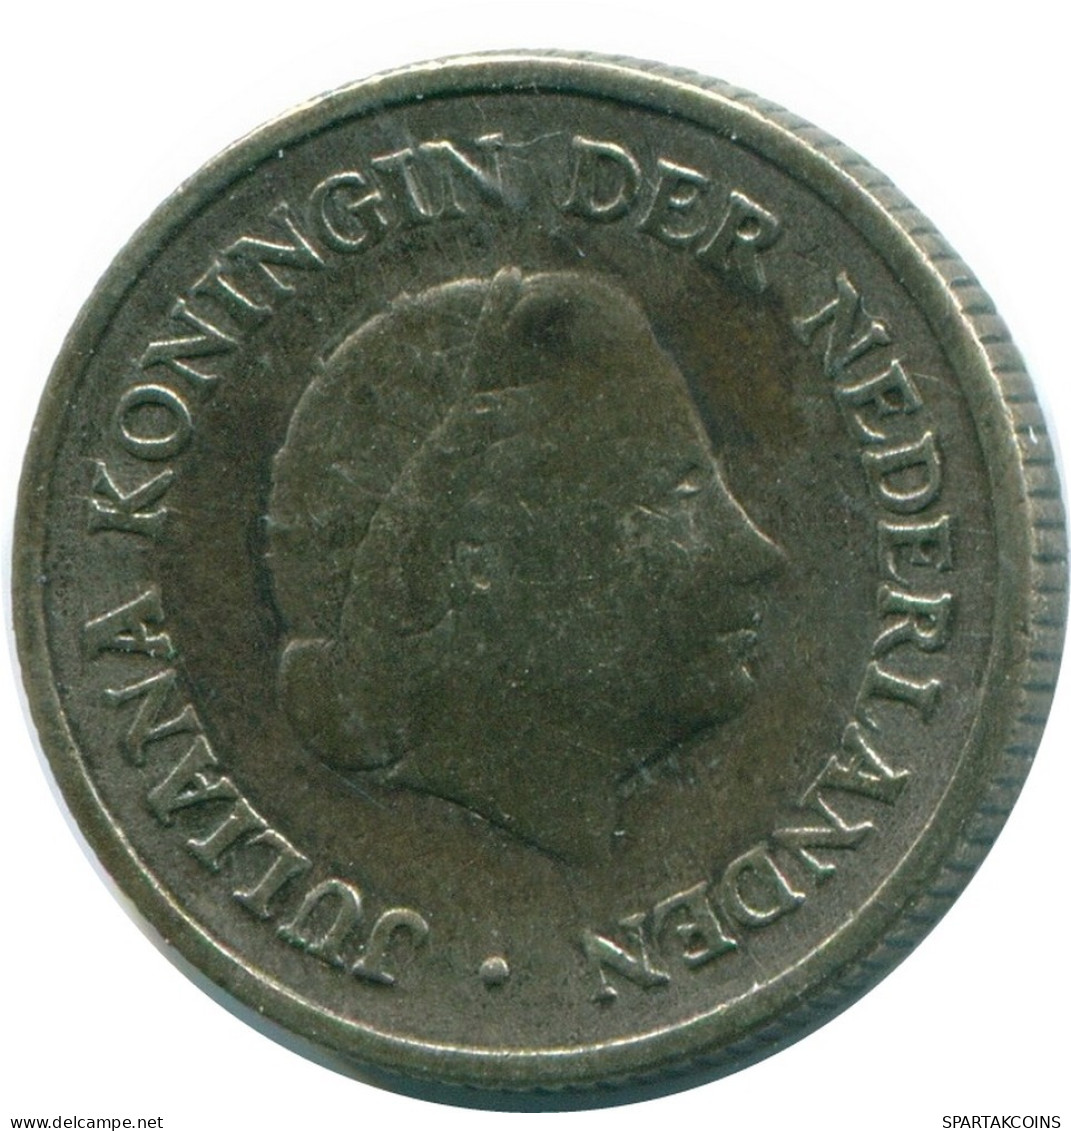 1/4 GULDEN 1954 NIEDERLÄNDISCHE ANTILLEN SILBER Koloniale Münze #NL10888.4.D.A - Niederländische Antillen